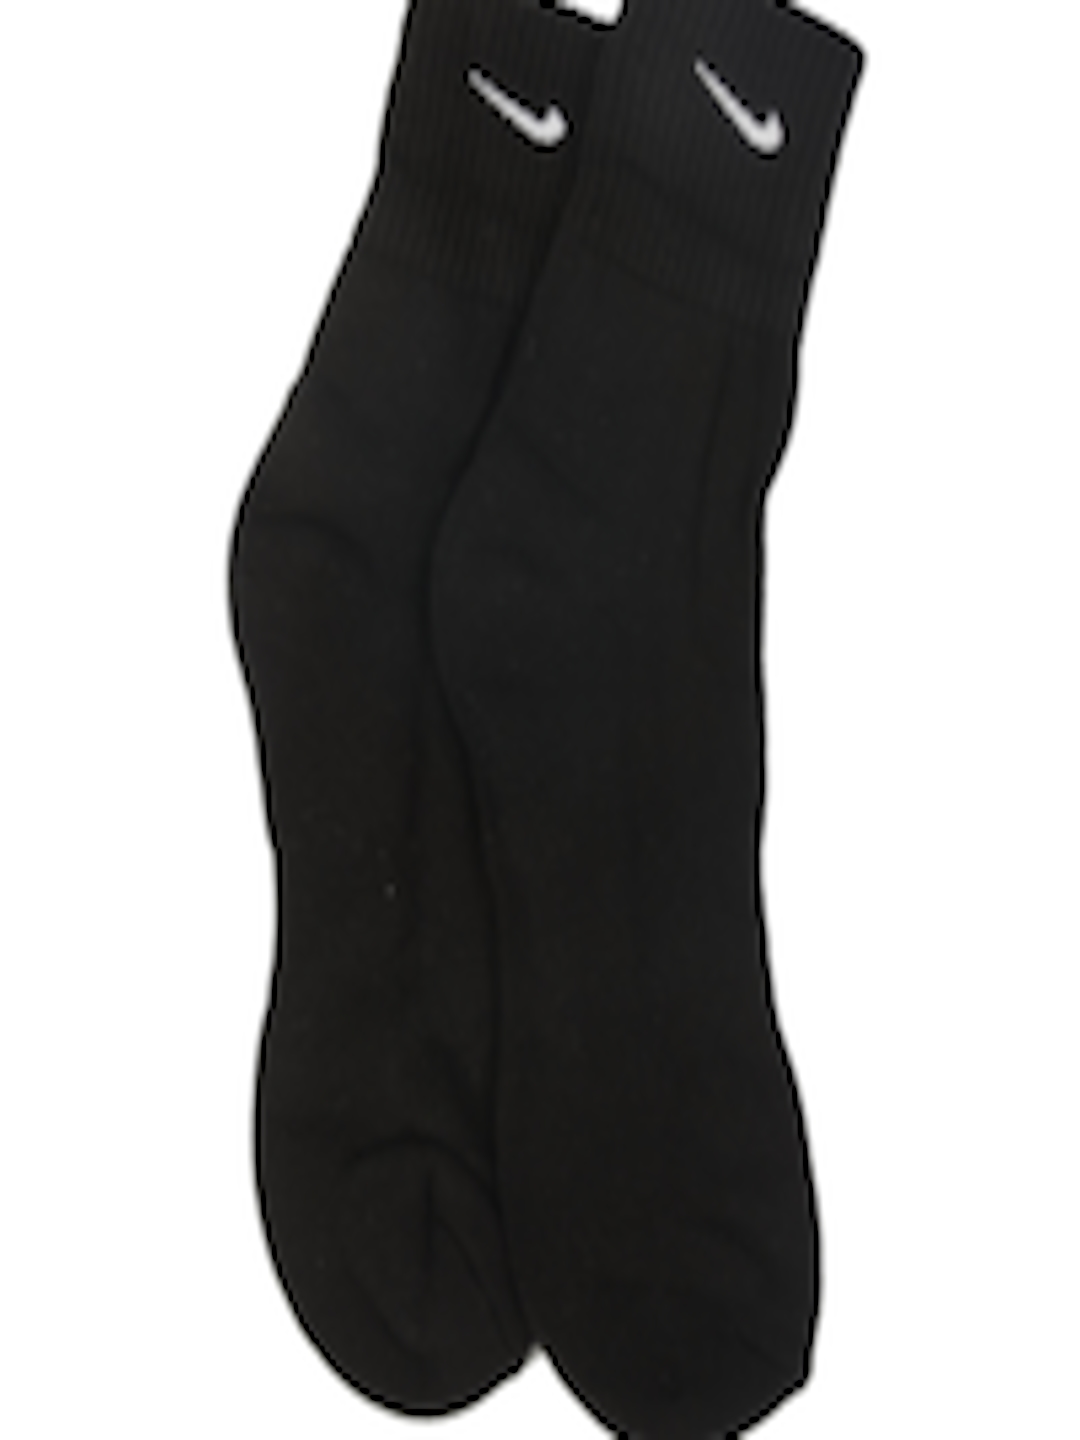 Buy Nike Unisex Black Socks - Socks for Unisex 8507 | Myntra